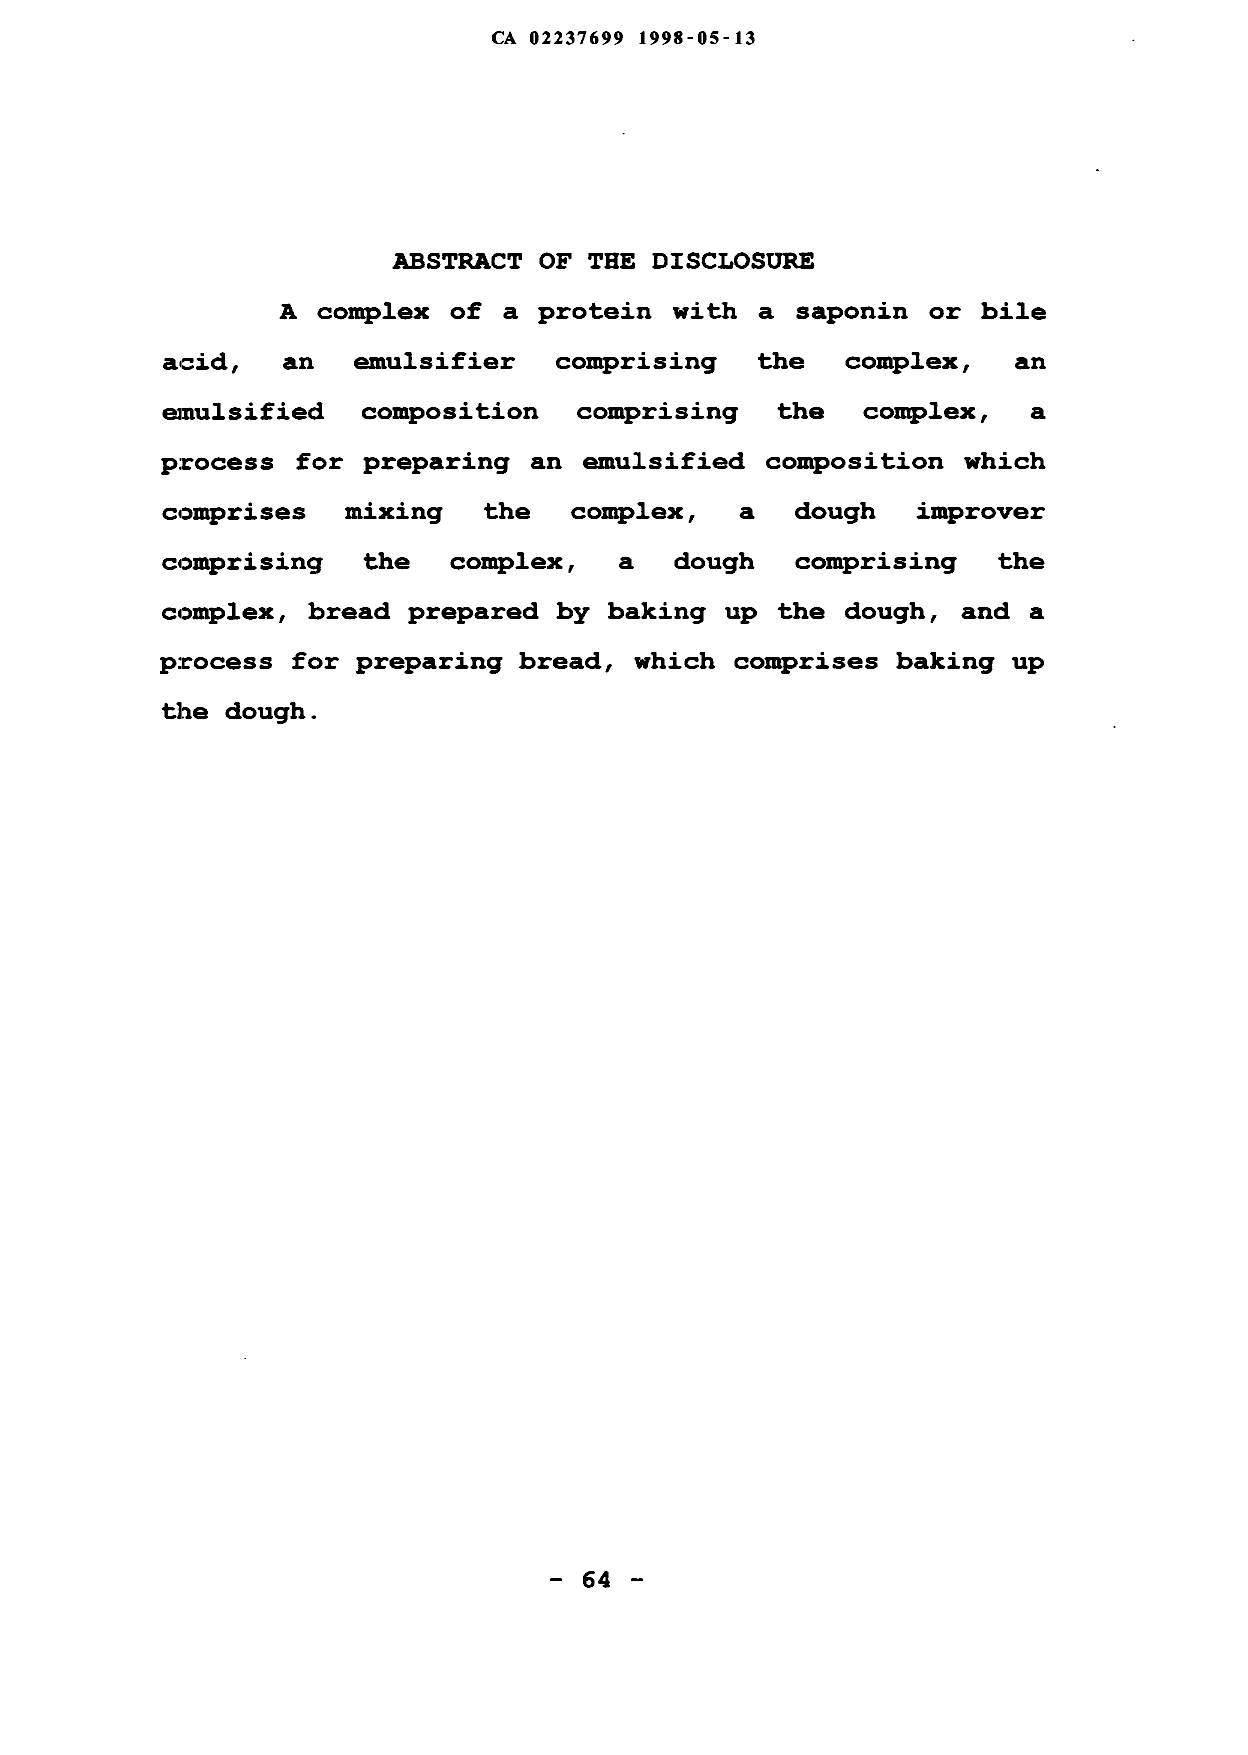 Document de brevet canadien 2237699. Abrégé 19980513. Image 1 de 1